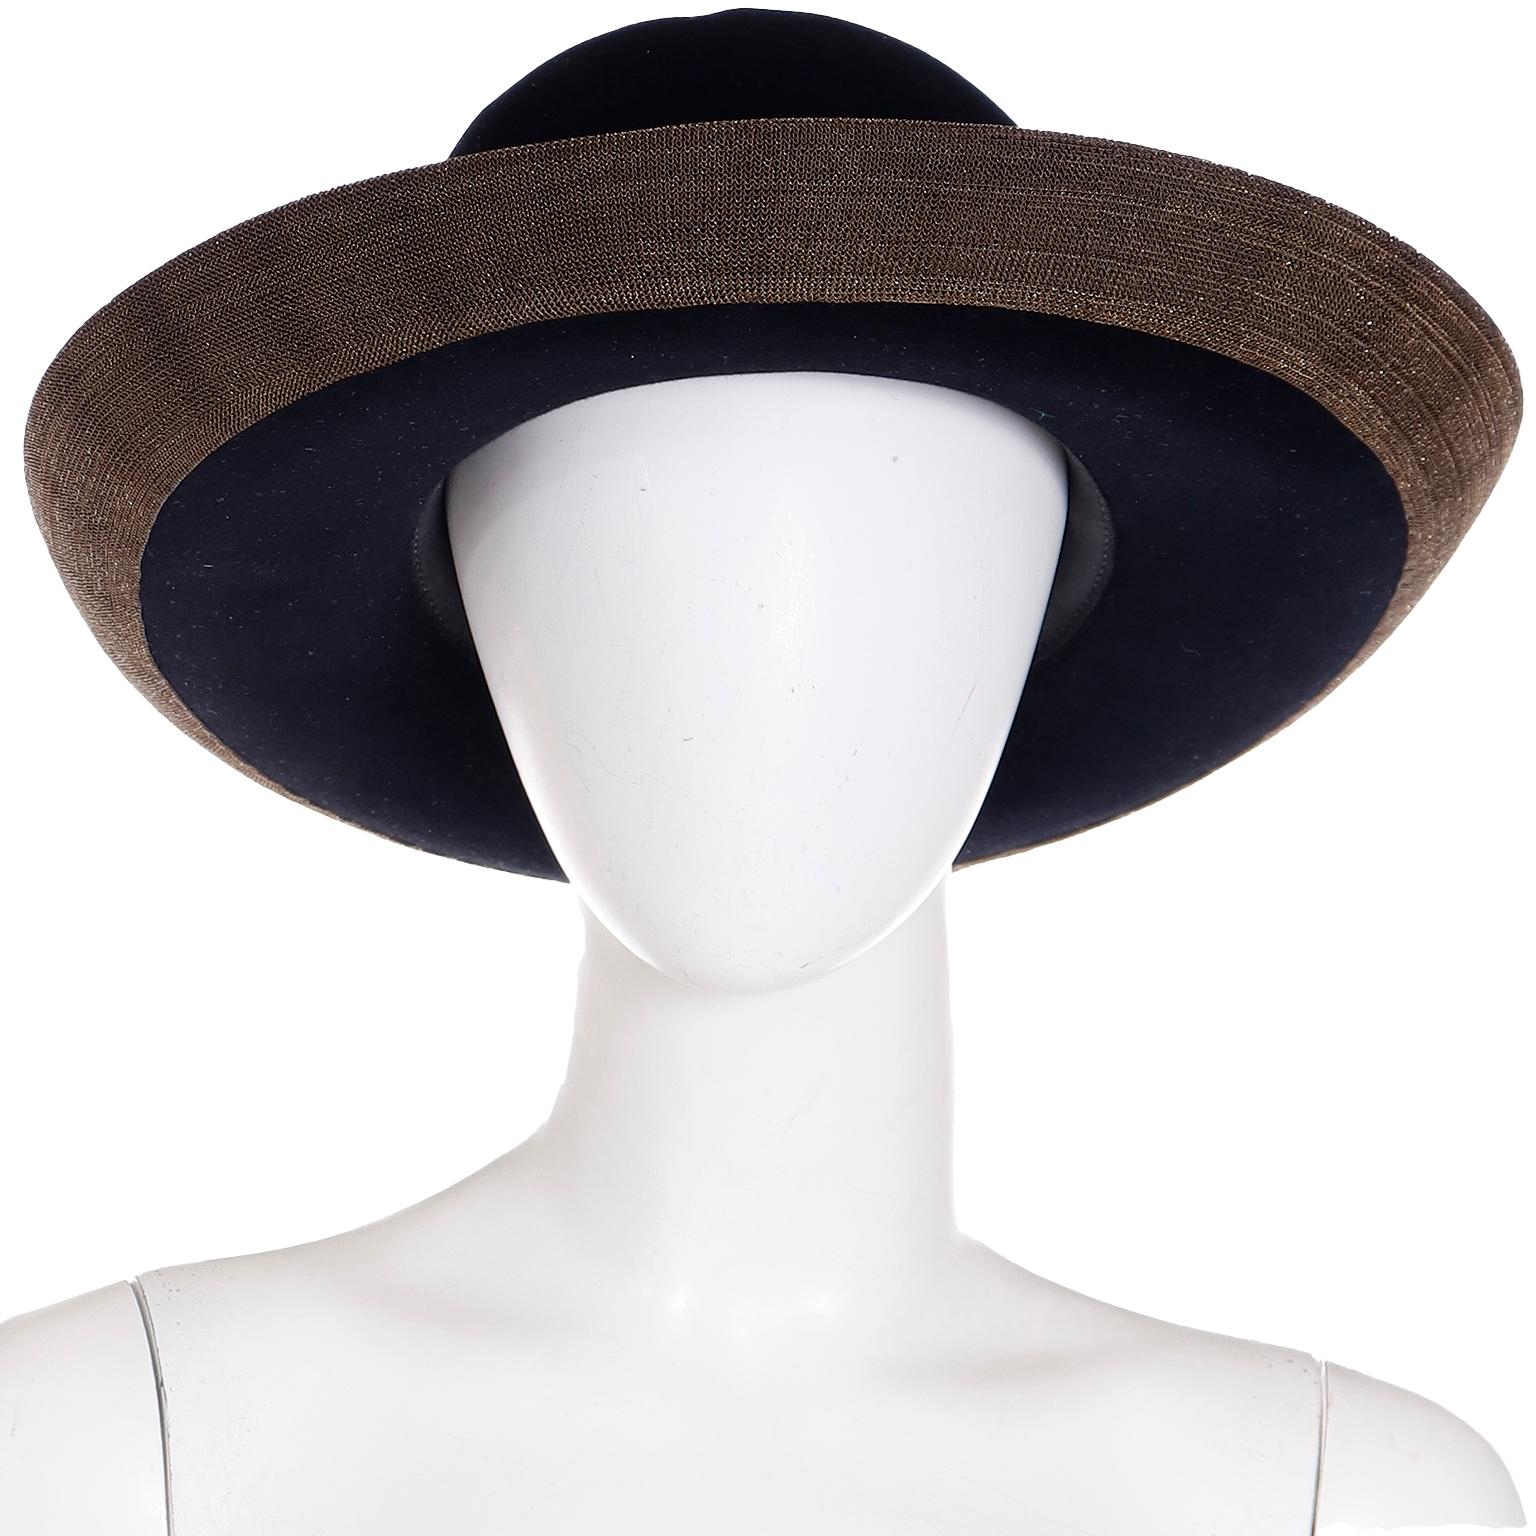 Dies ist eine fabelhafte Vintage 1990's Patricia Underwood New York schwarz gefilzt Wollhut. Die Hüte von Patricia Underwood waren einige der besten Hüte in Bezug auf Qualität und Stil und wir finden sie immer wieder gerne! Wir lieben die